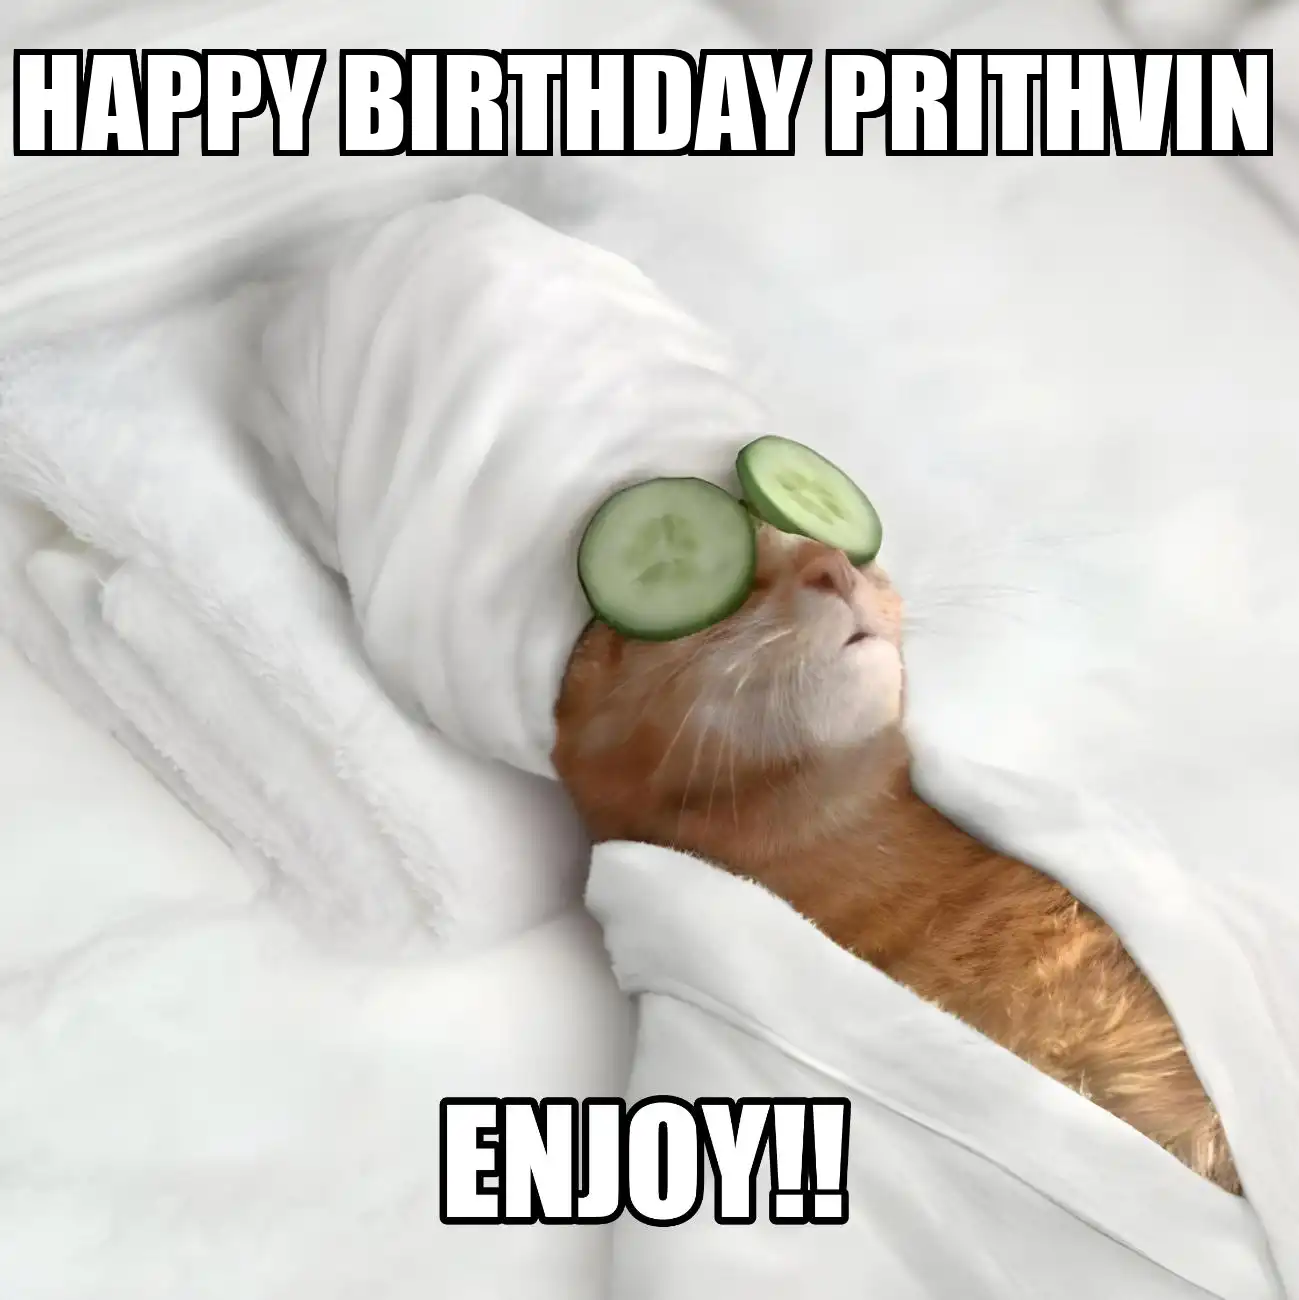 Happy Birthday Prithvin Enjoy Cat Meme